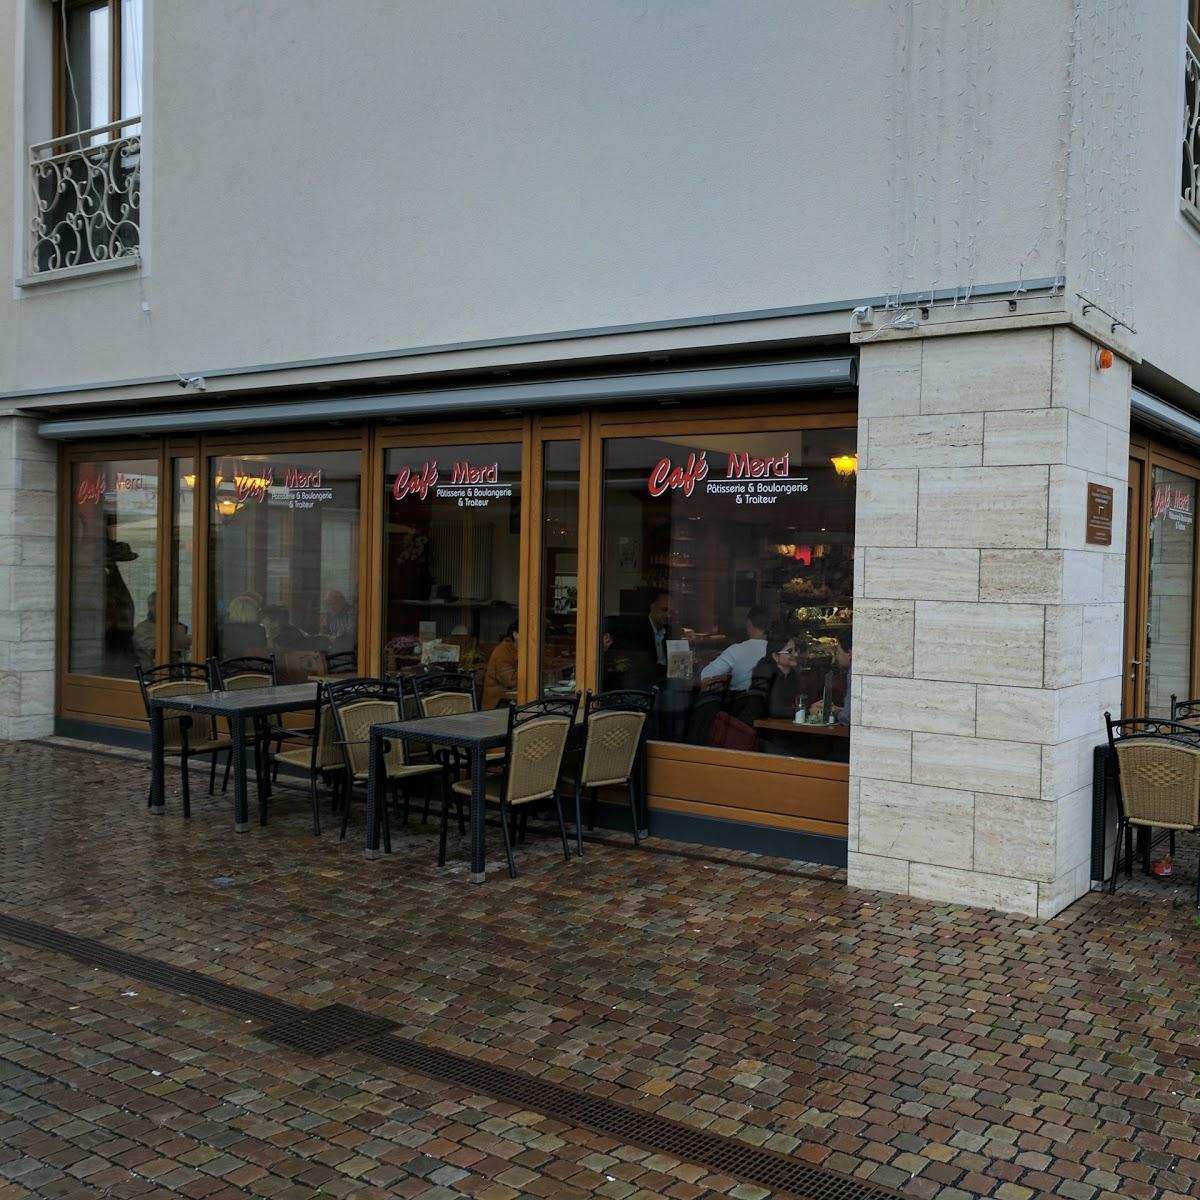 Restaurant "Rossini Ristorante" in Eschborn